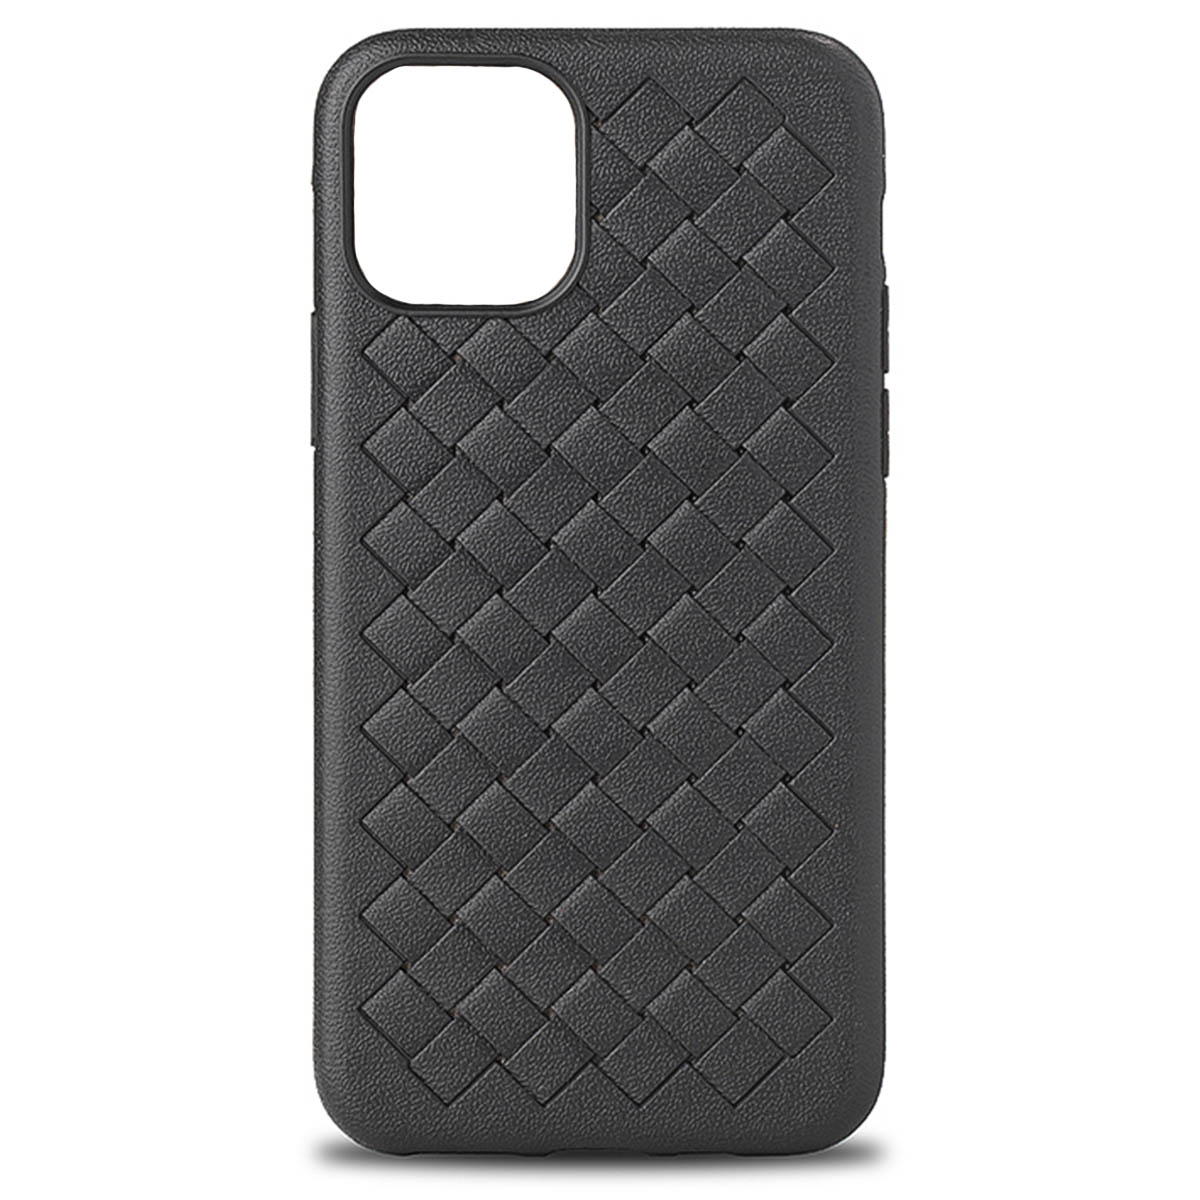 Чехол накладка для APPLE iPhone 12, iPhone 12 Pro (6.1), силикон, плетение, цвет черный